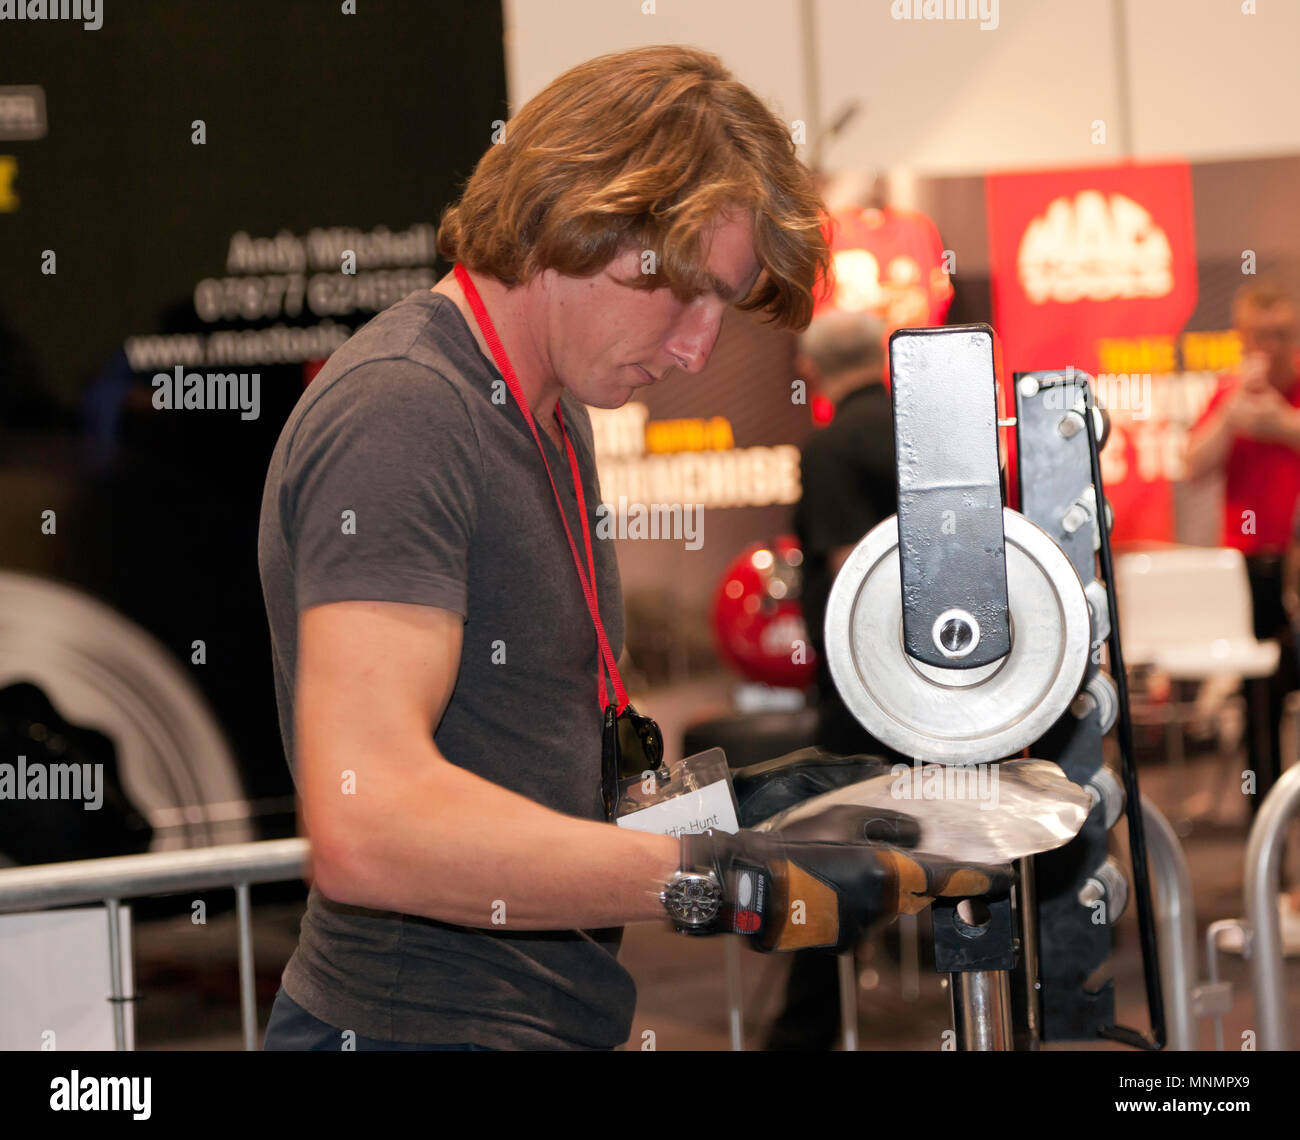 Pilote de course Freddie Hunt apprendre à l'aide d'une molette permettant de façonner un panneau métallique, à la voiture, au cours de la zone S.O.S. London Motor Show 2018. Banque D'Images